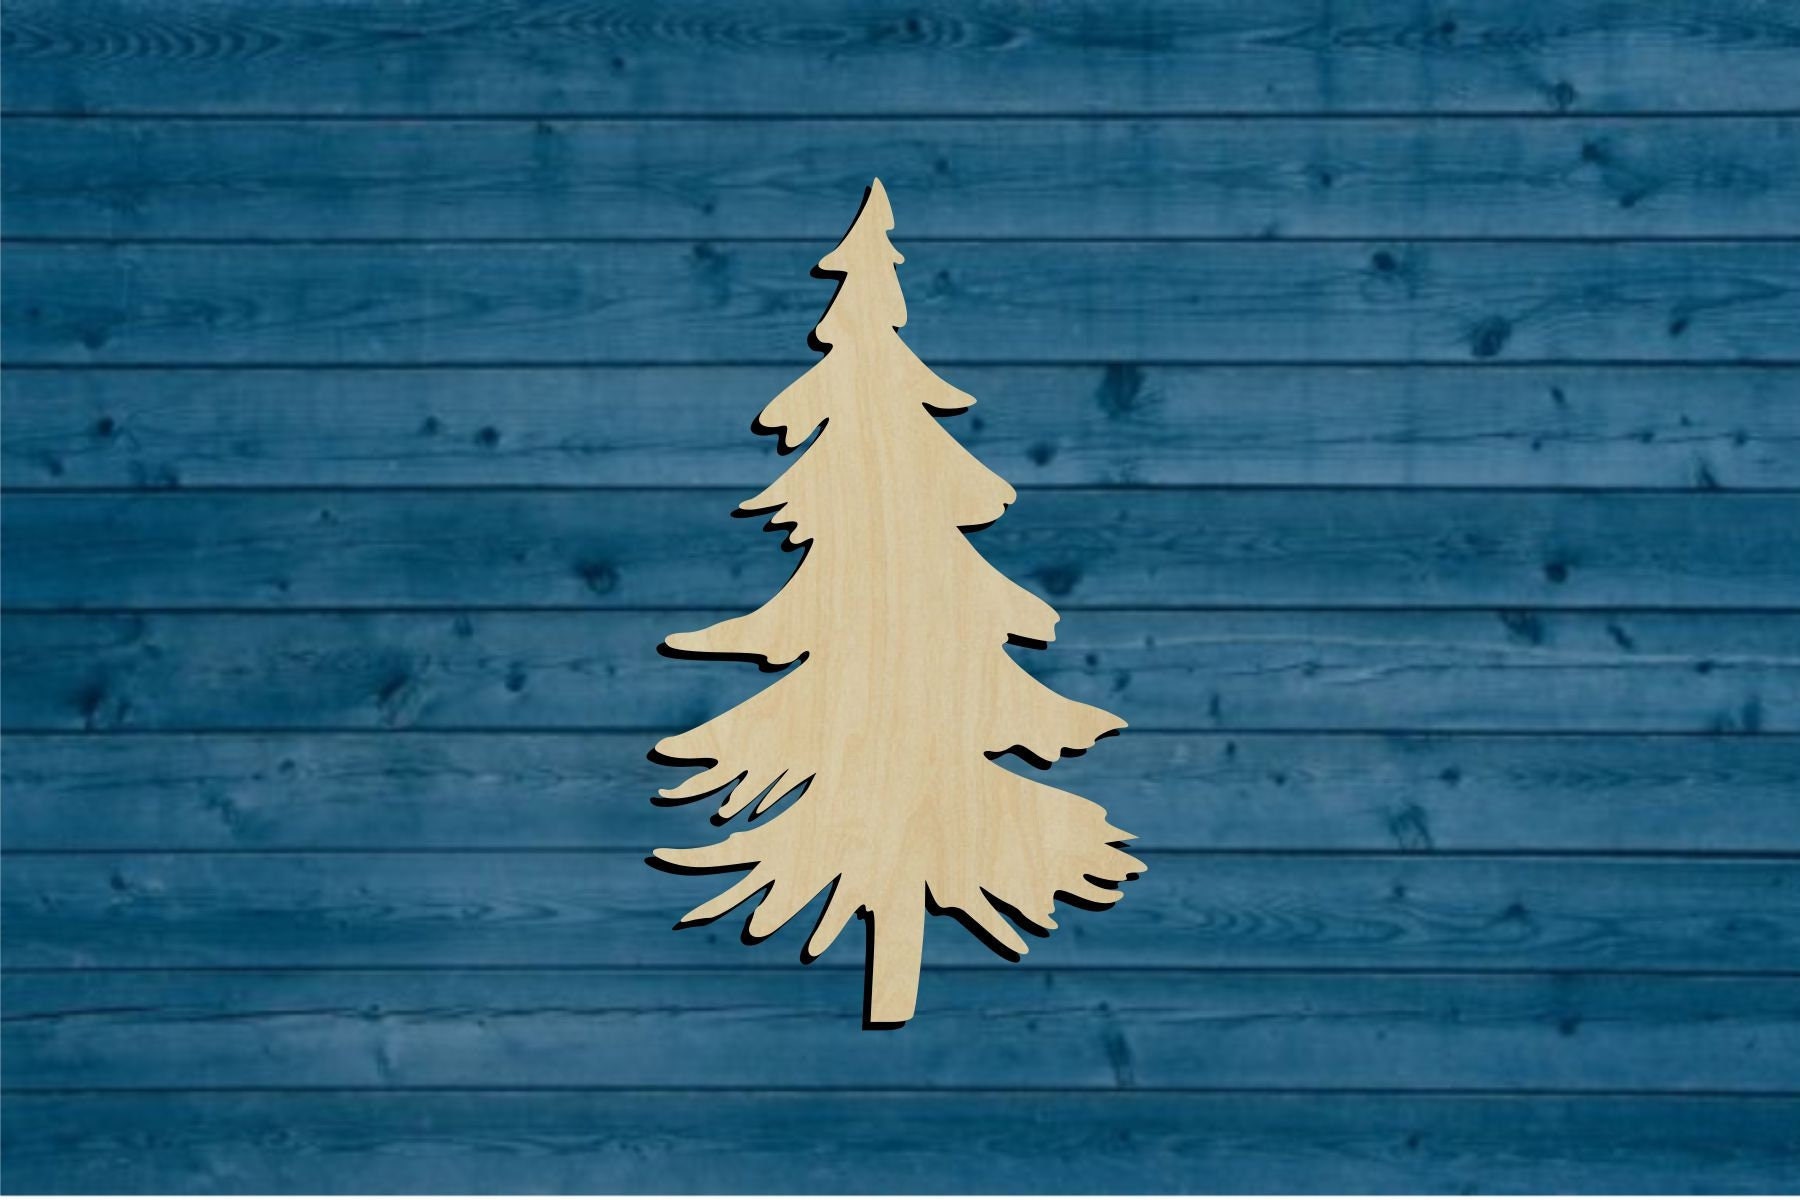 Wood Pine Shape, Bass, Unpainted Wooden Cutout DIY